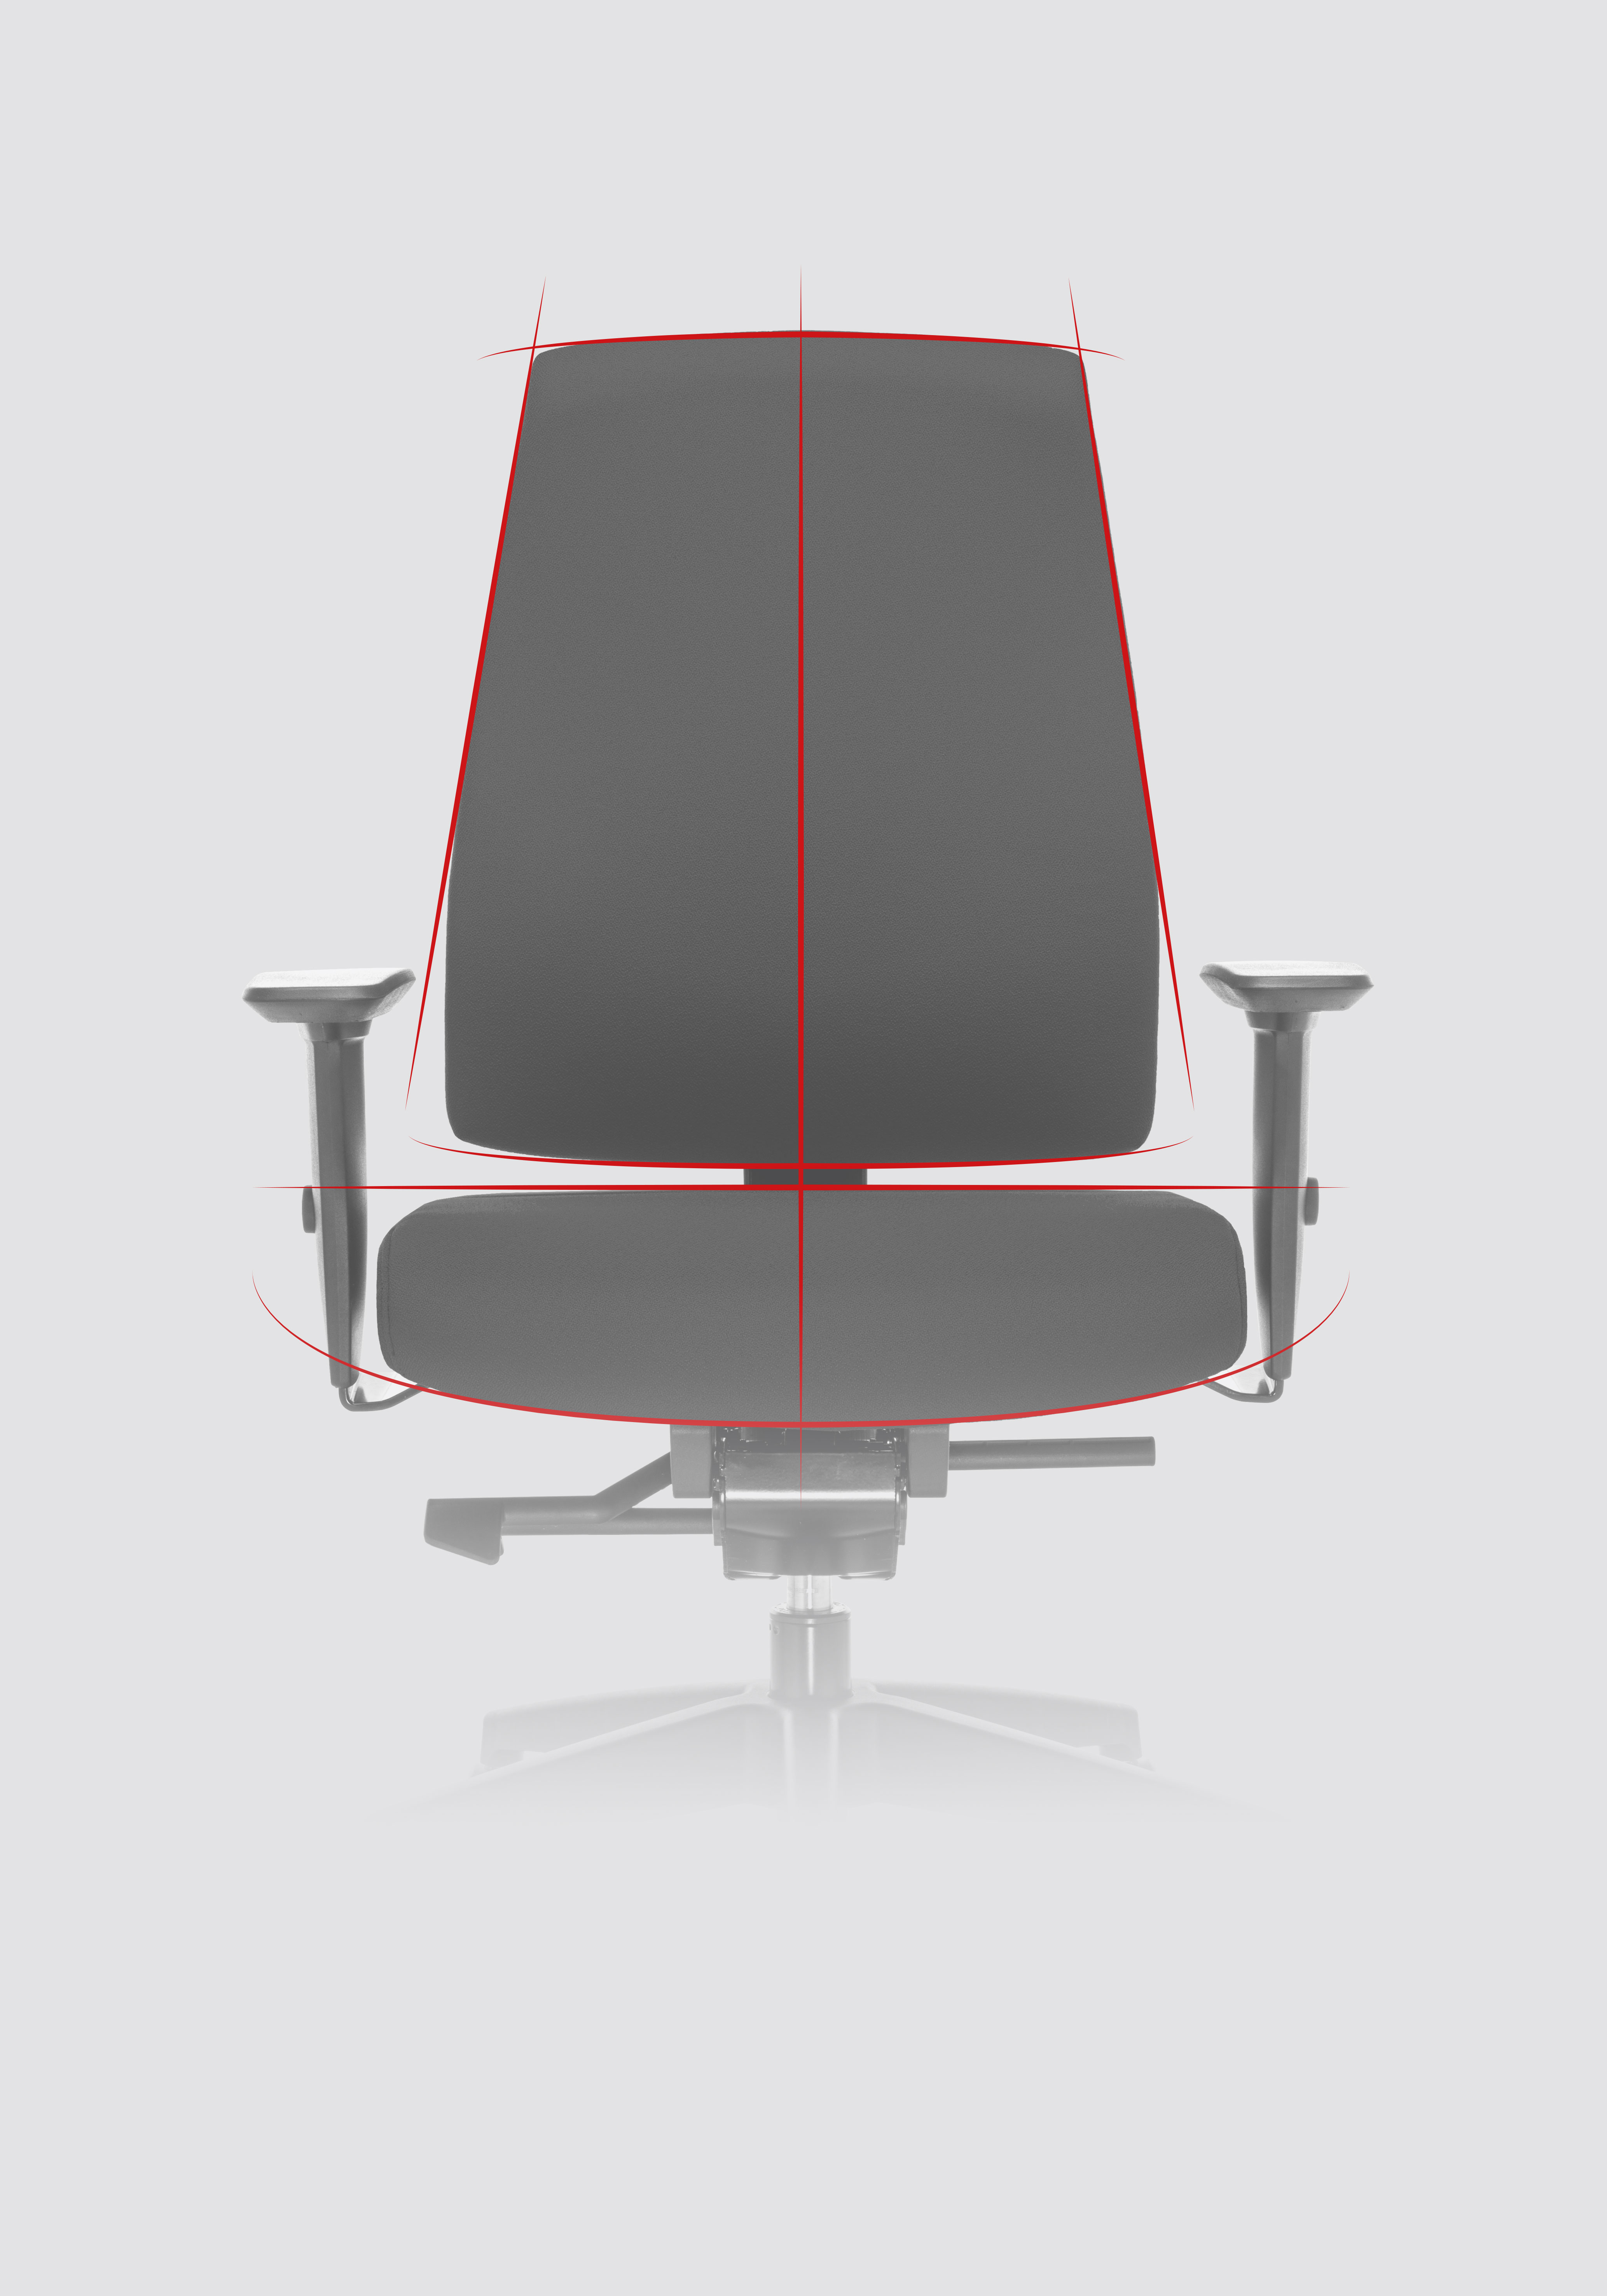 Draaistoel Goal in vooraanzicht met focus op de contouren van de bureaustoel door dynamische lijnen